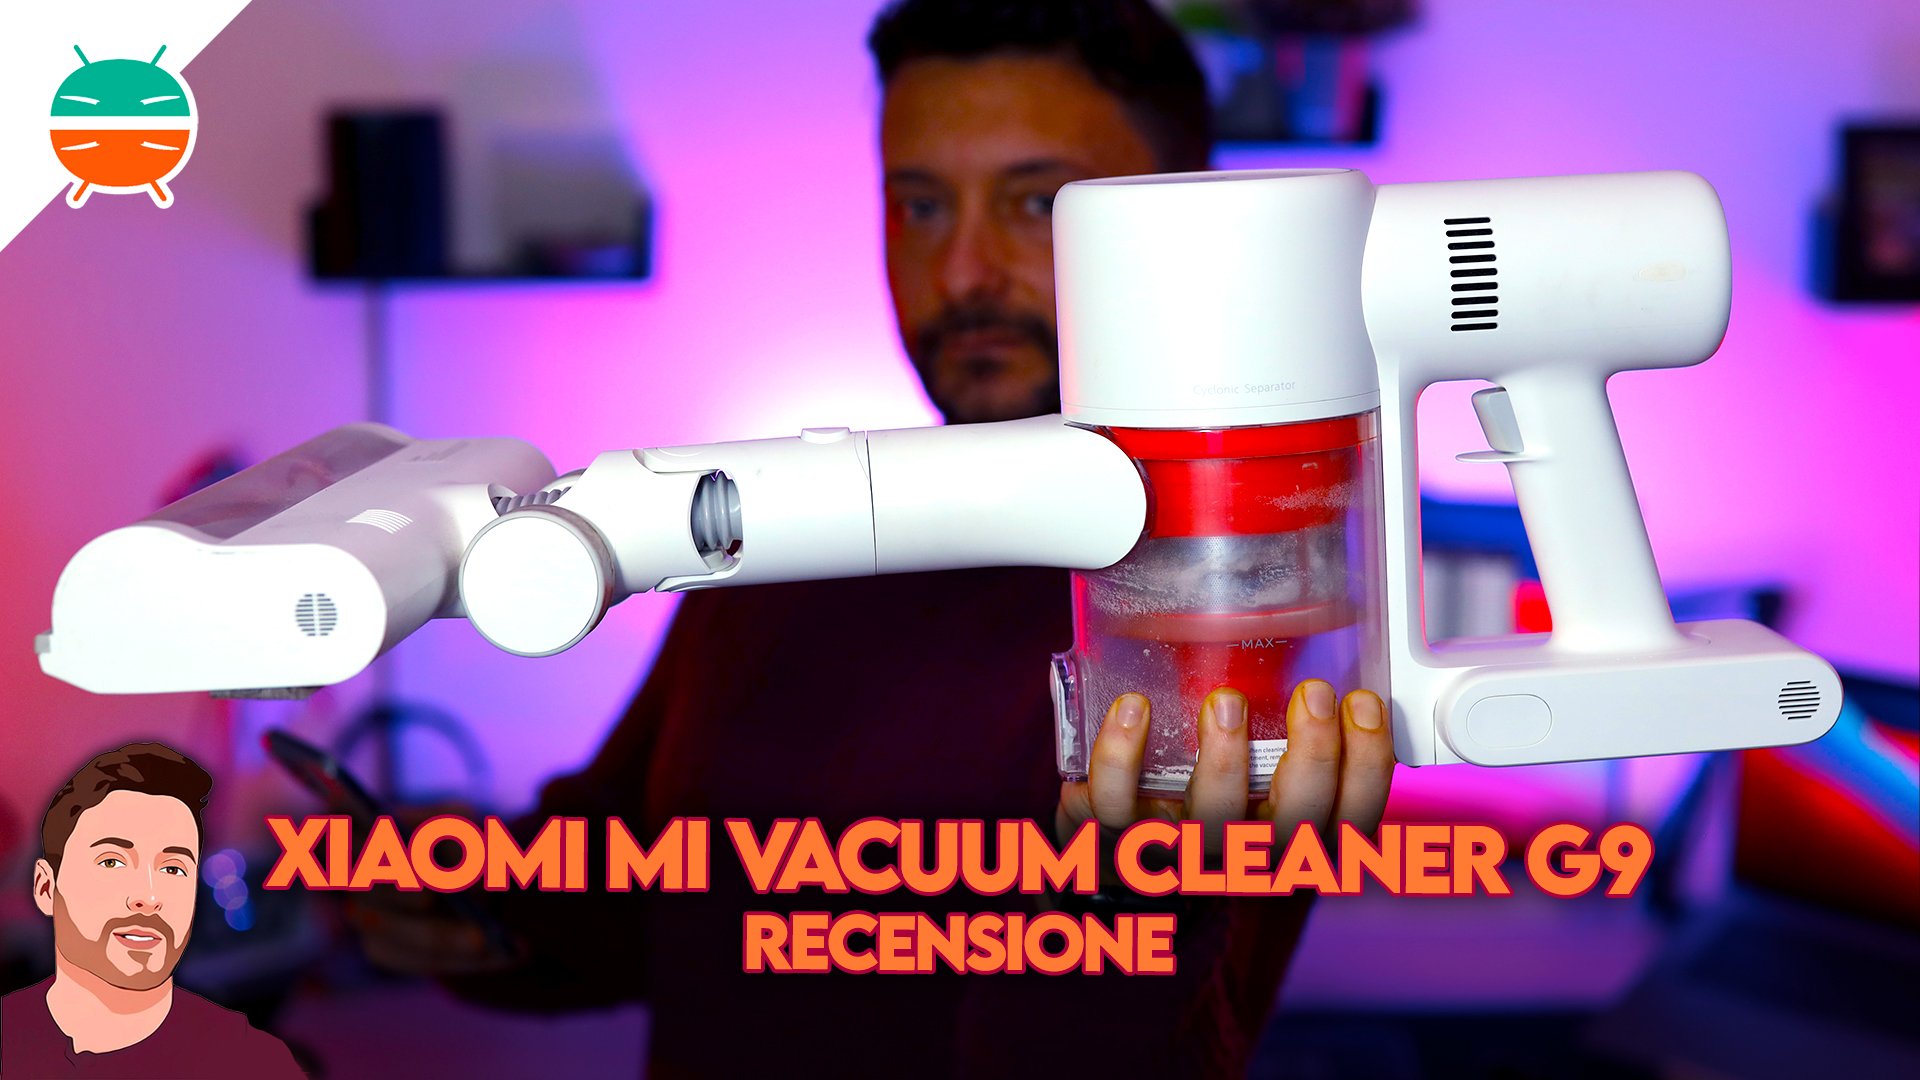 Mi Vacuum Cleaner G9